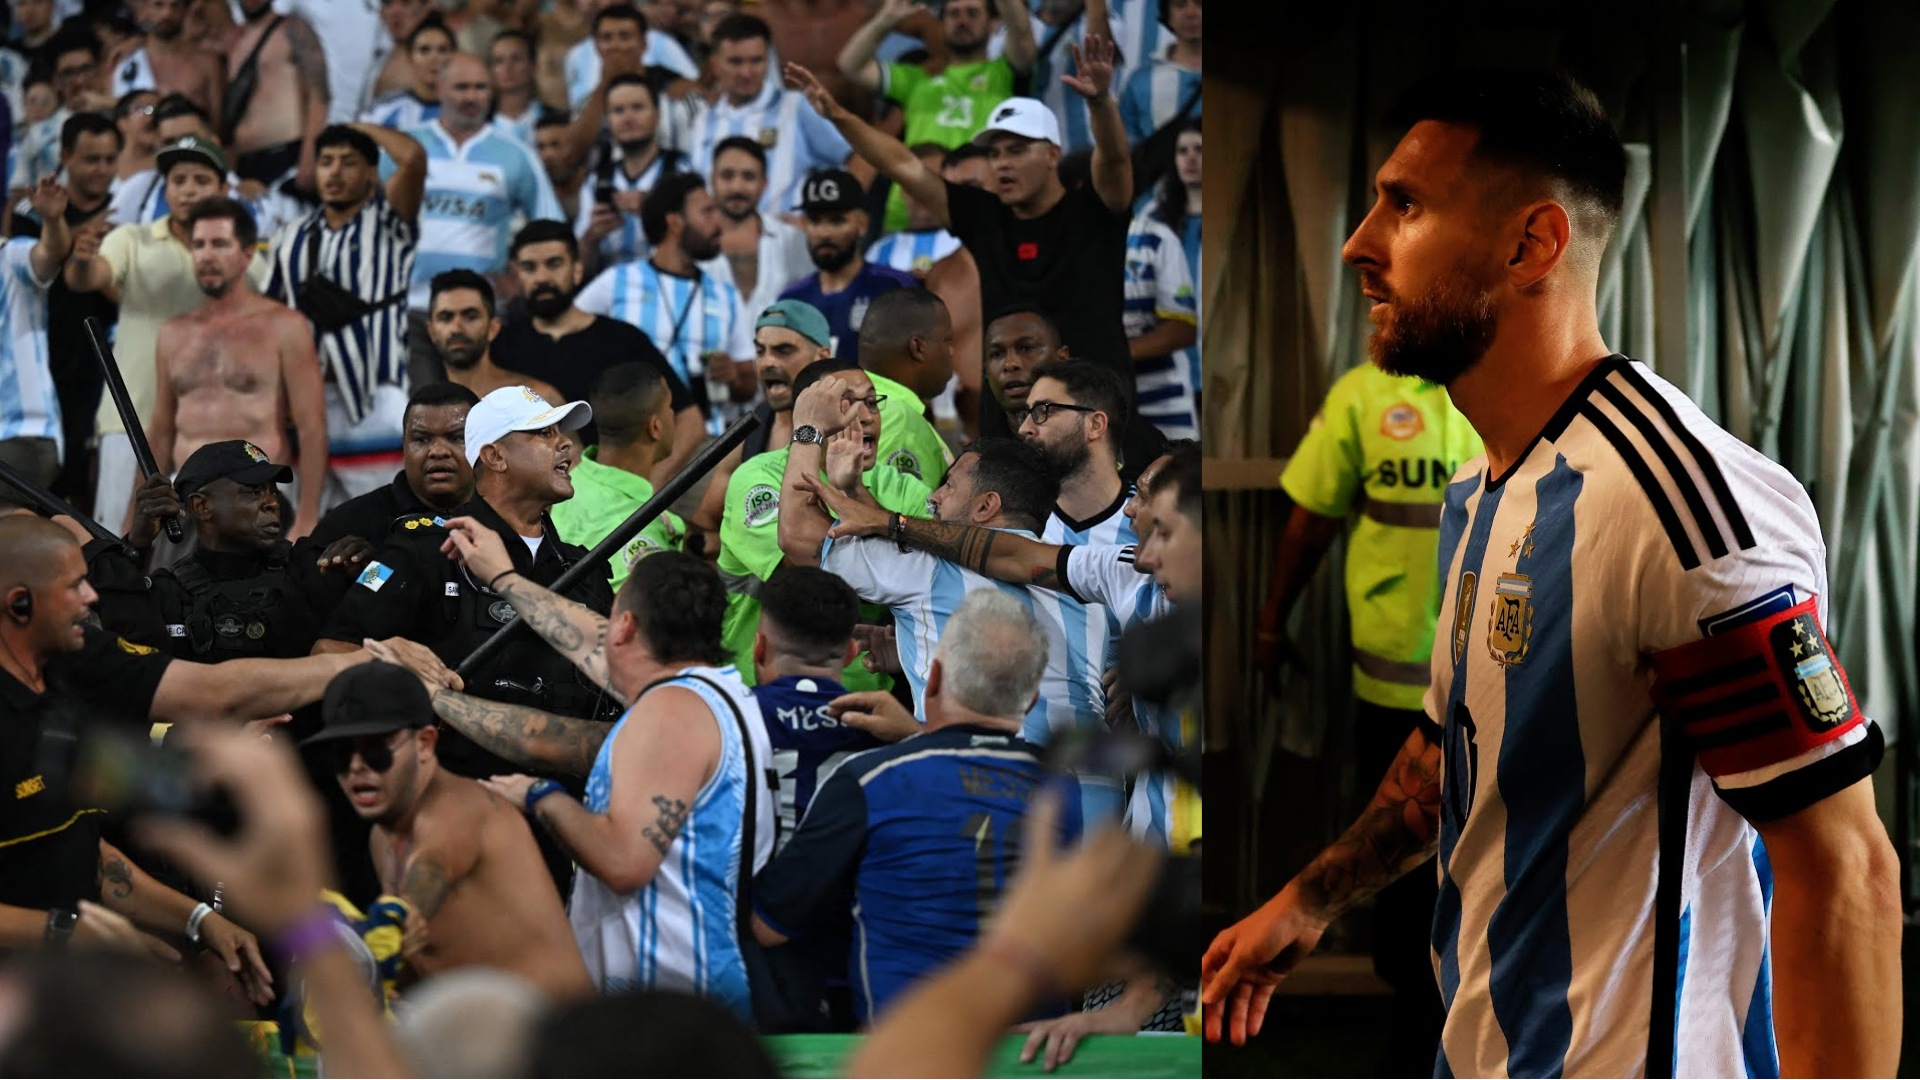 Picchiati i tifosi dell’Argentina in Brasile. Messi e compagni si rifiutano di giocare, poi entrano e vincono